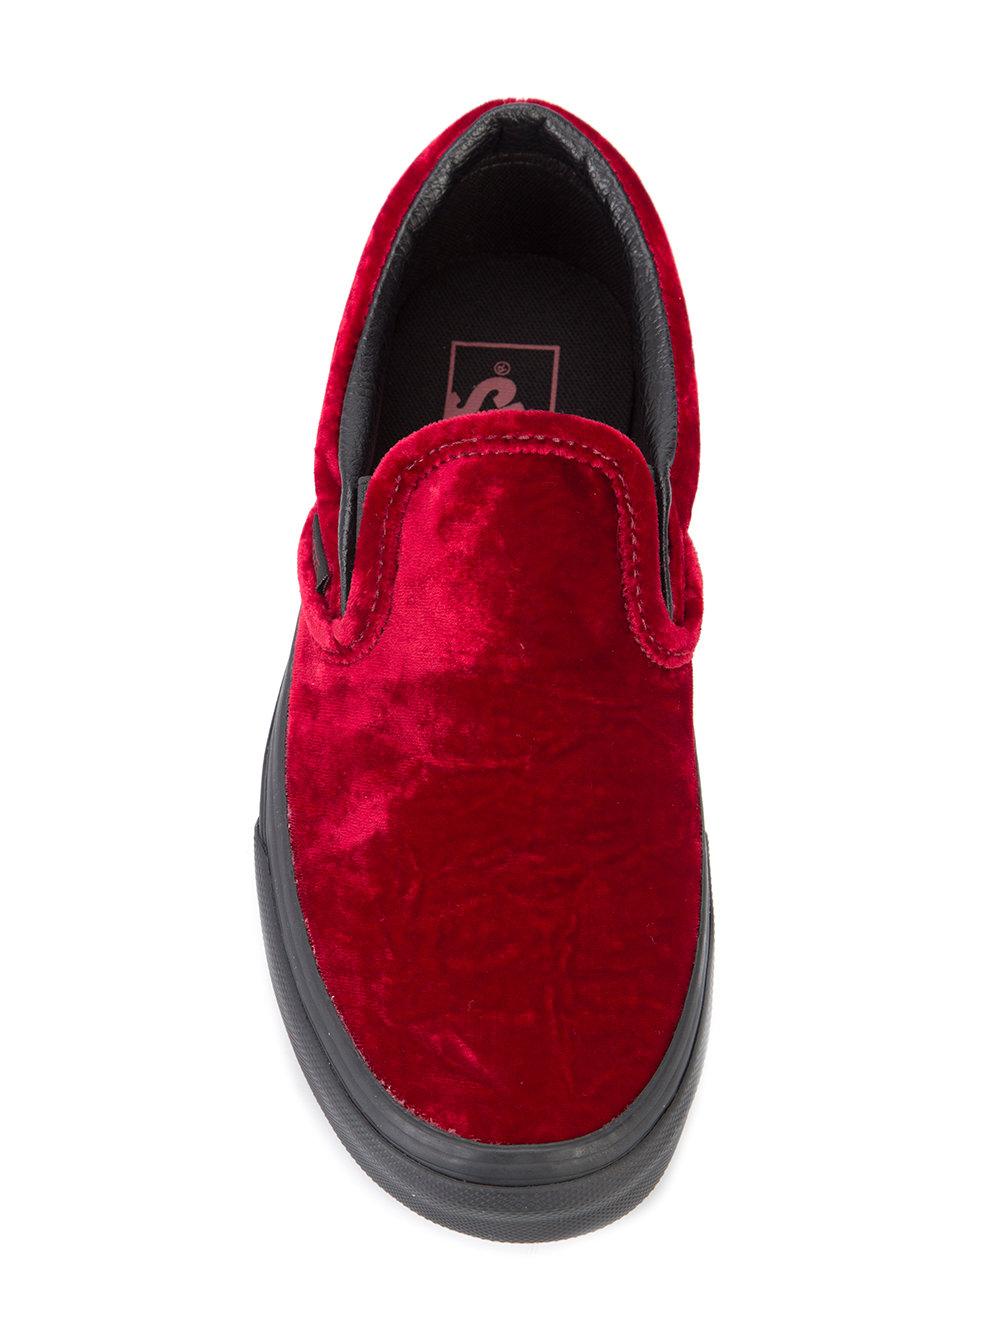 Vans Velvet Slip-on Sneakers in Red for Men - Lyst